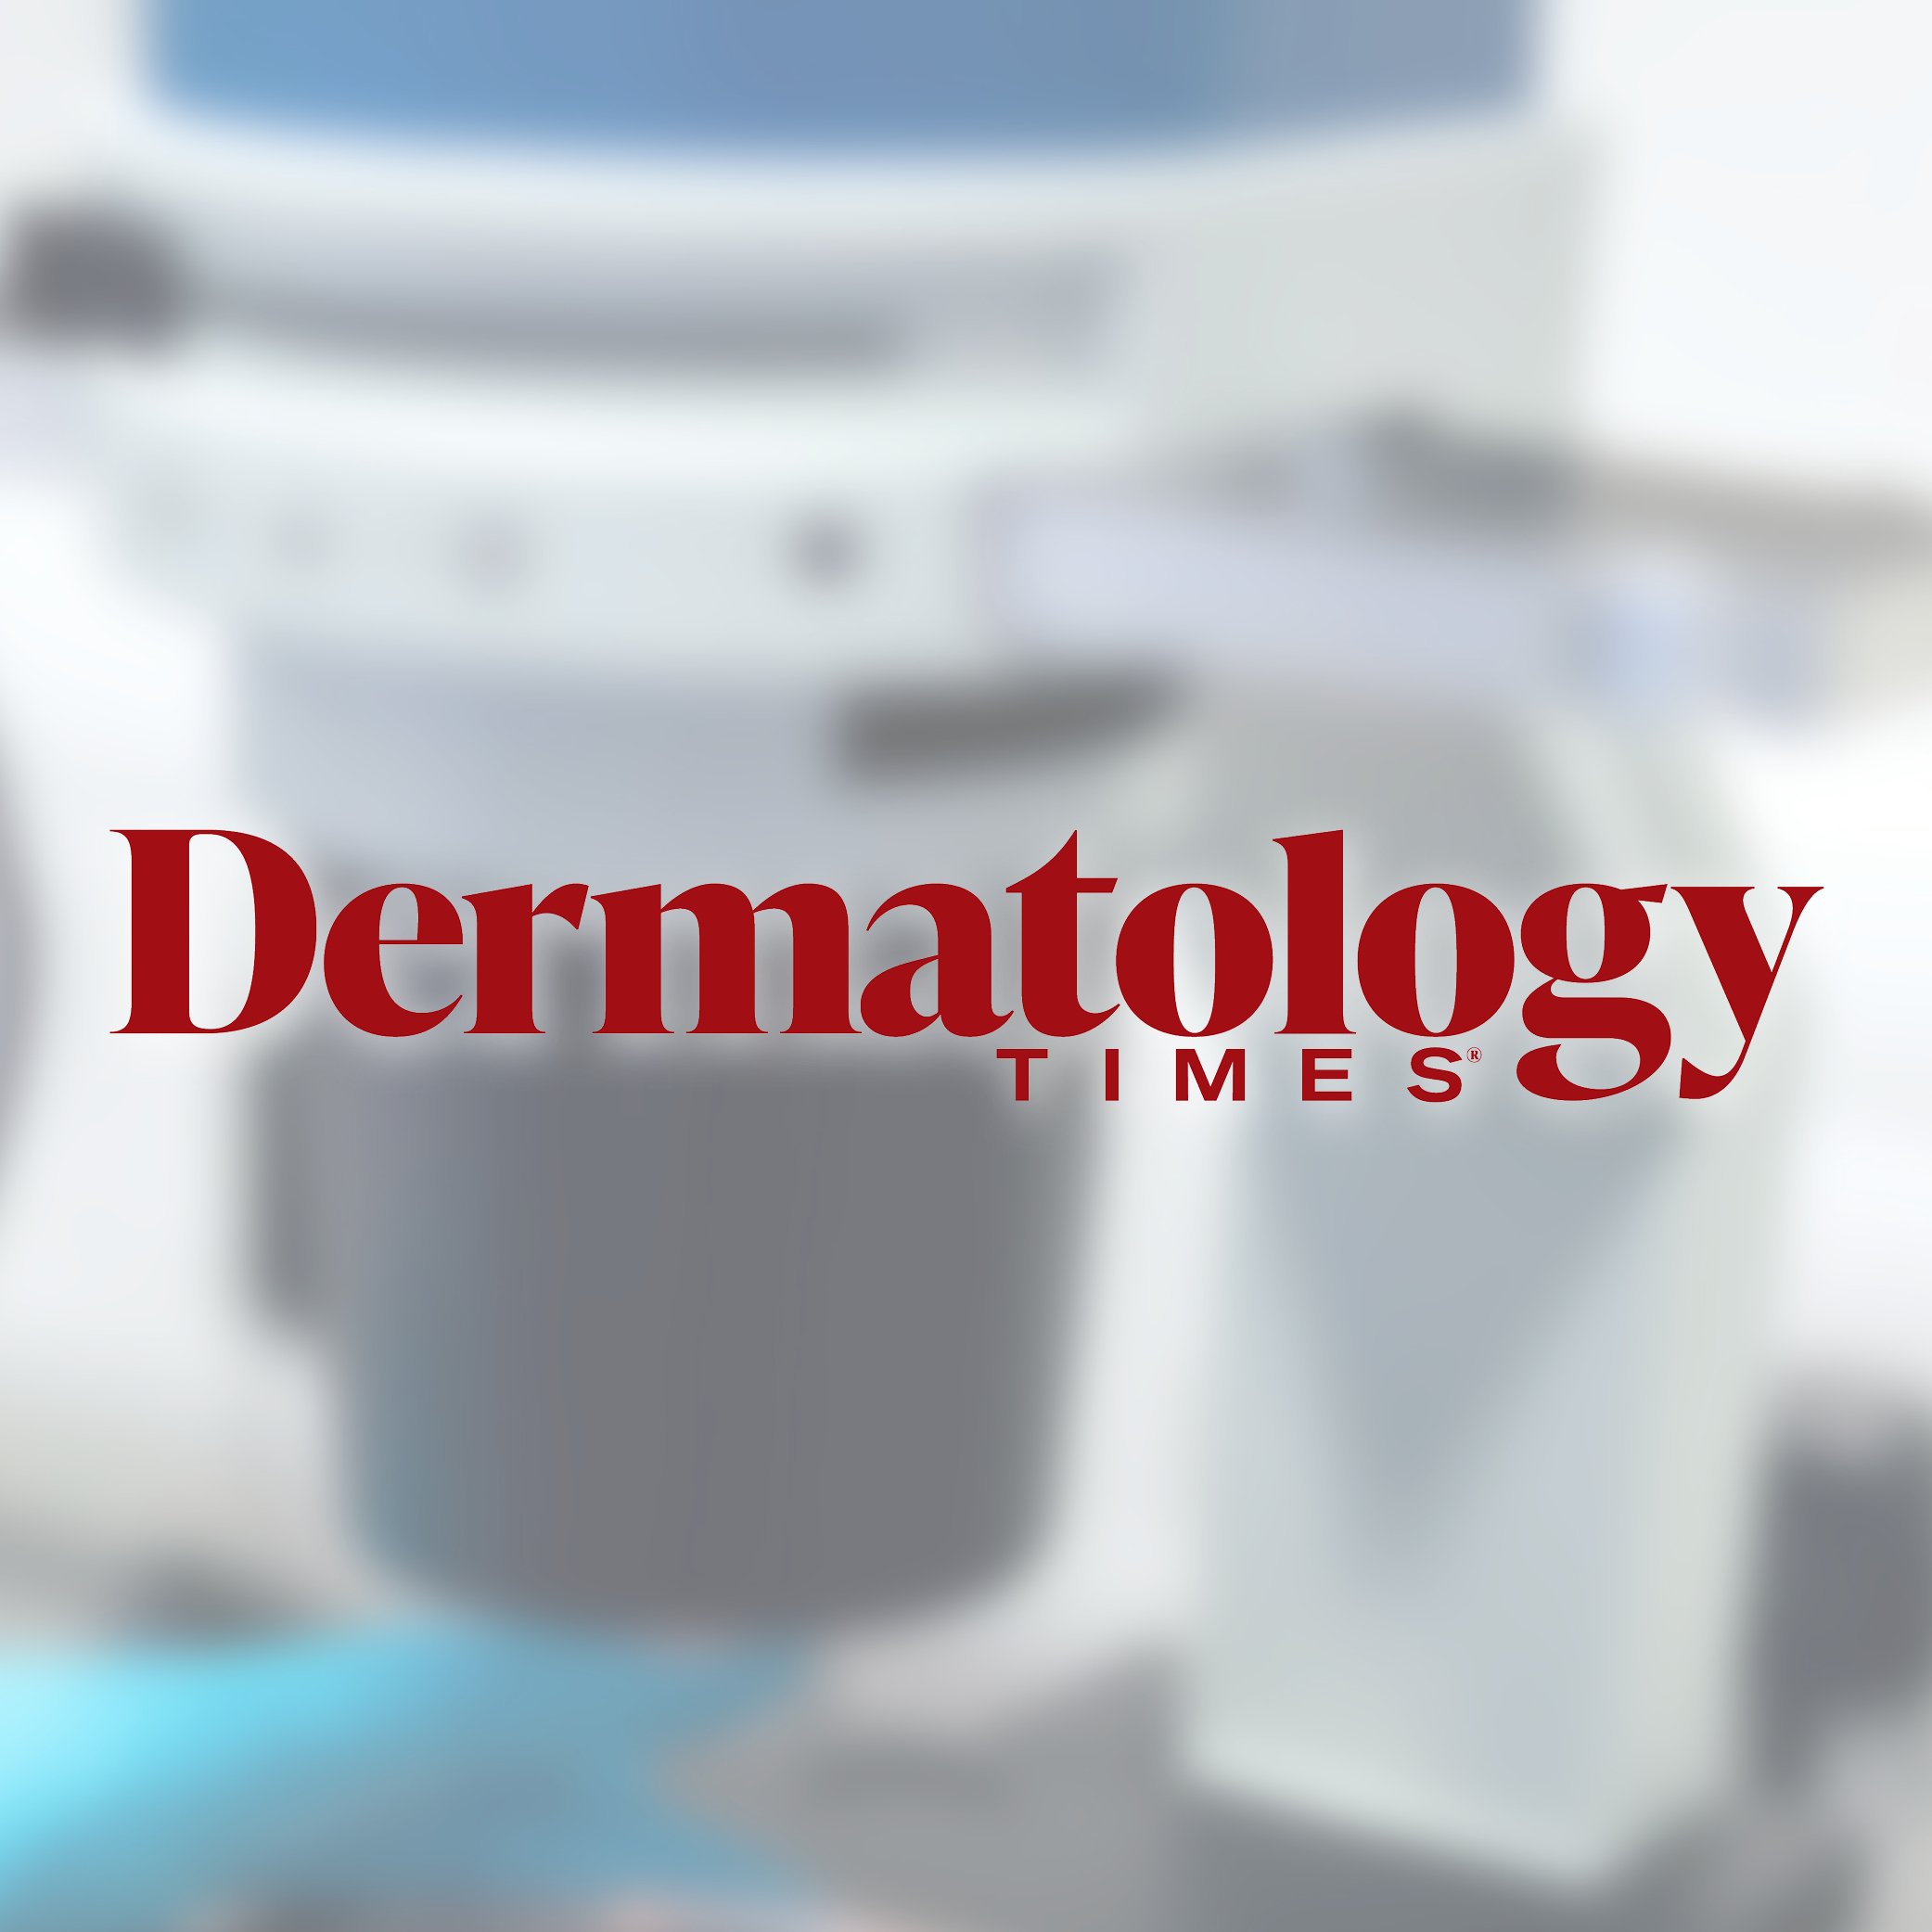 Dermatology Times